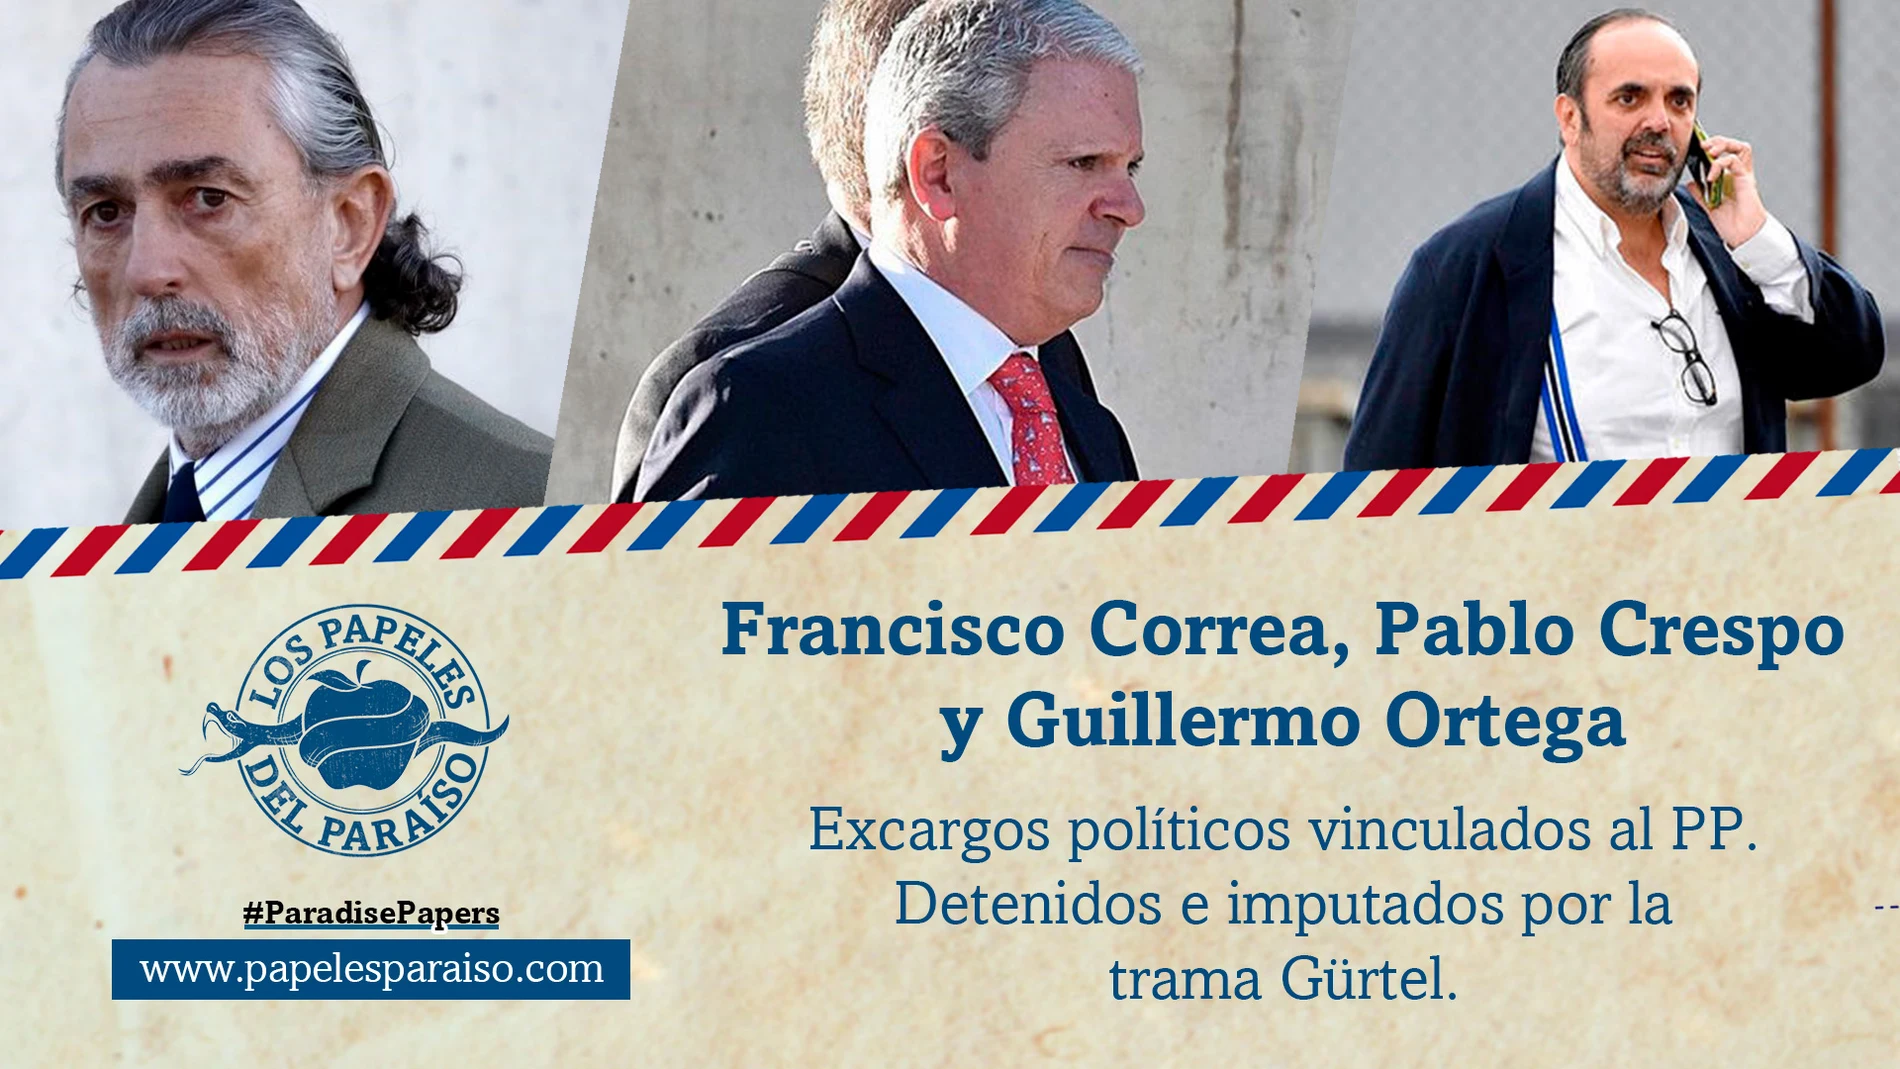 Francisco Correa, Pablo Crespo y Guillermo Ortega, cabecillas de la trama Gürtel